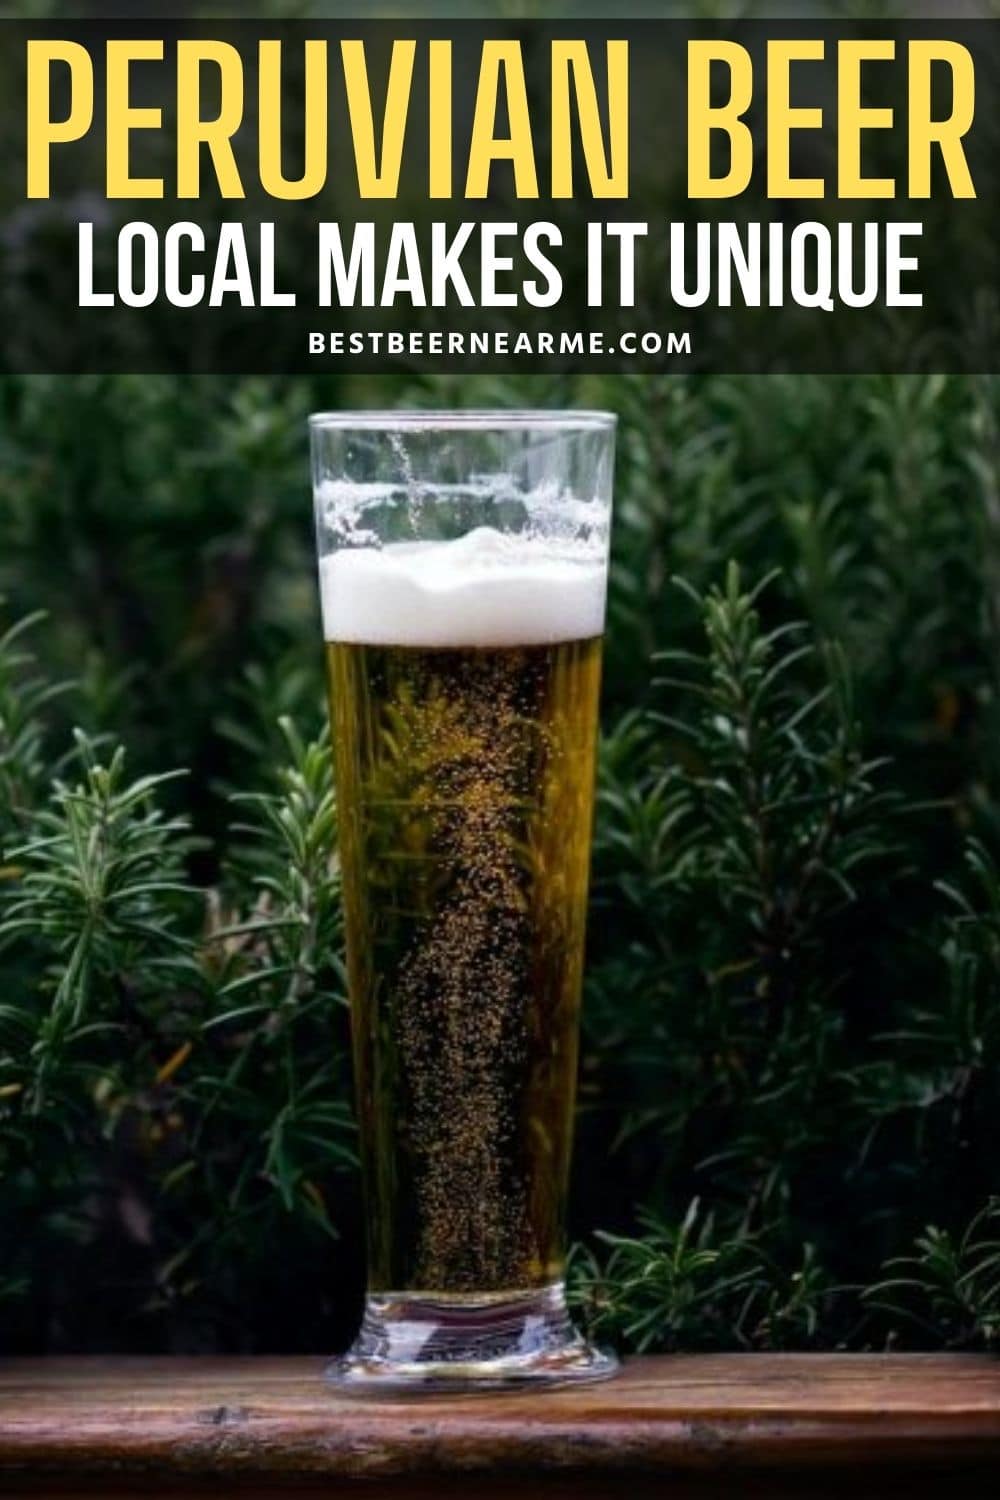 Peruvian Beer – Local Makes it Unique